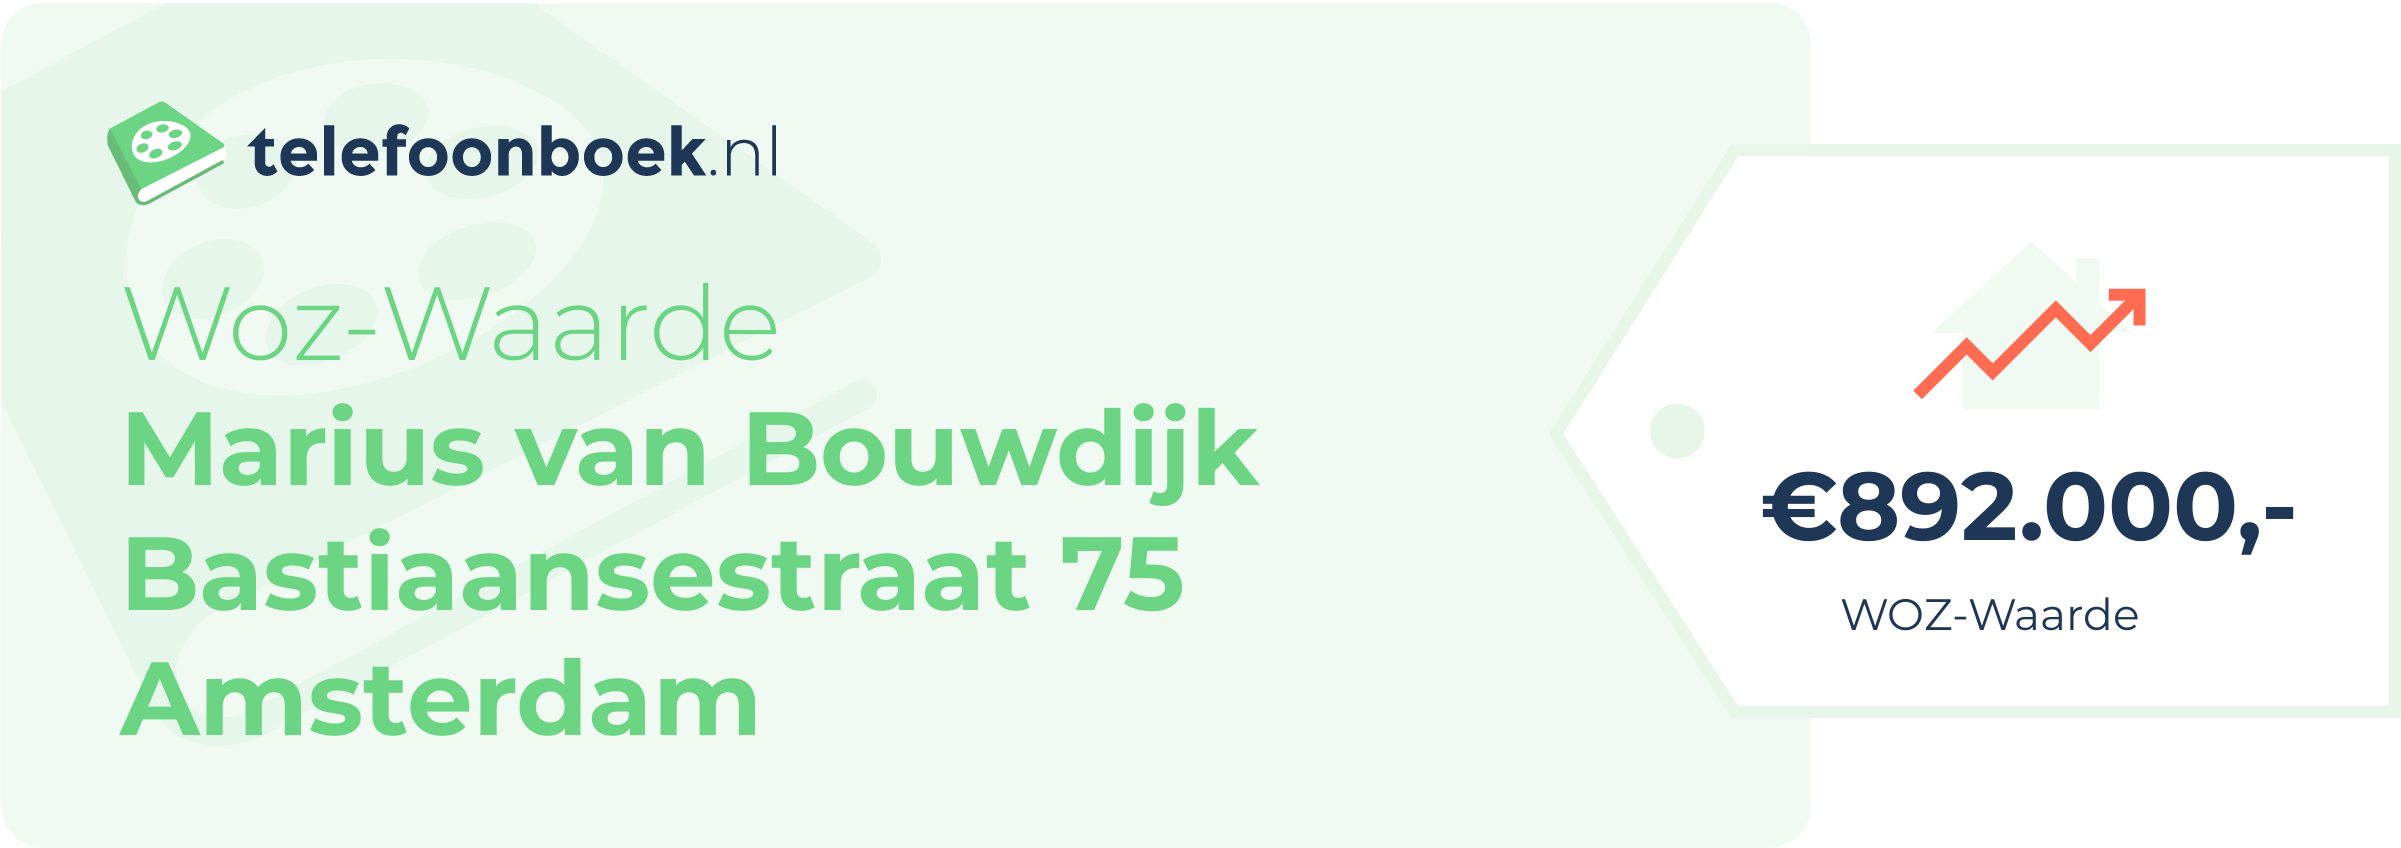 WOZ-waarde Marius Van Bouwdijk Bastiaansestraat 75 Amsterdam